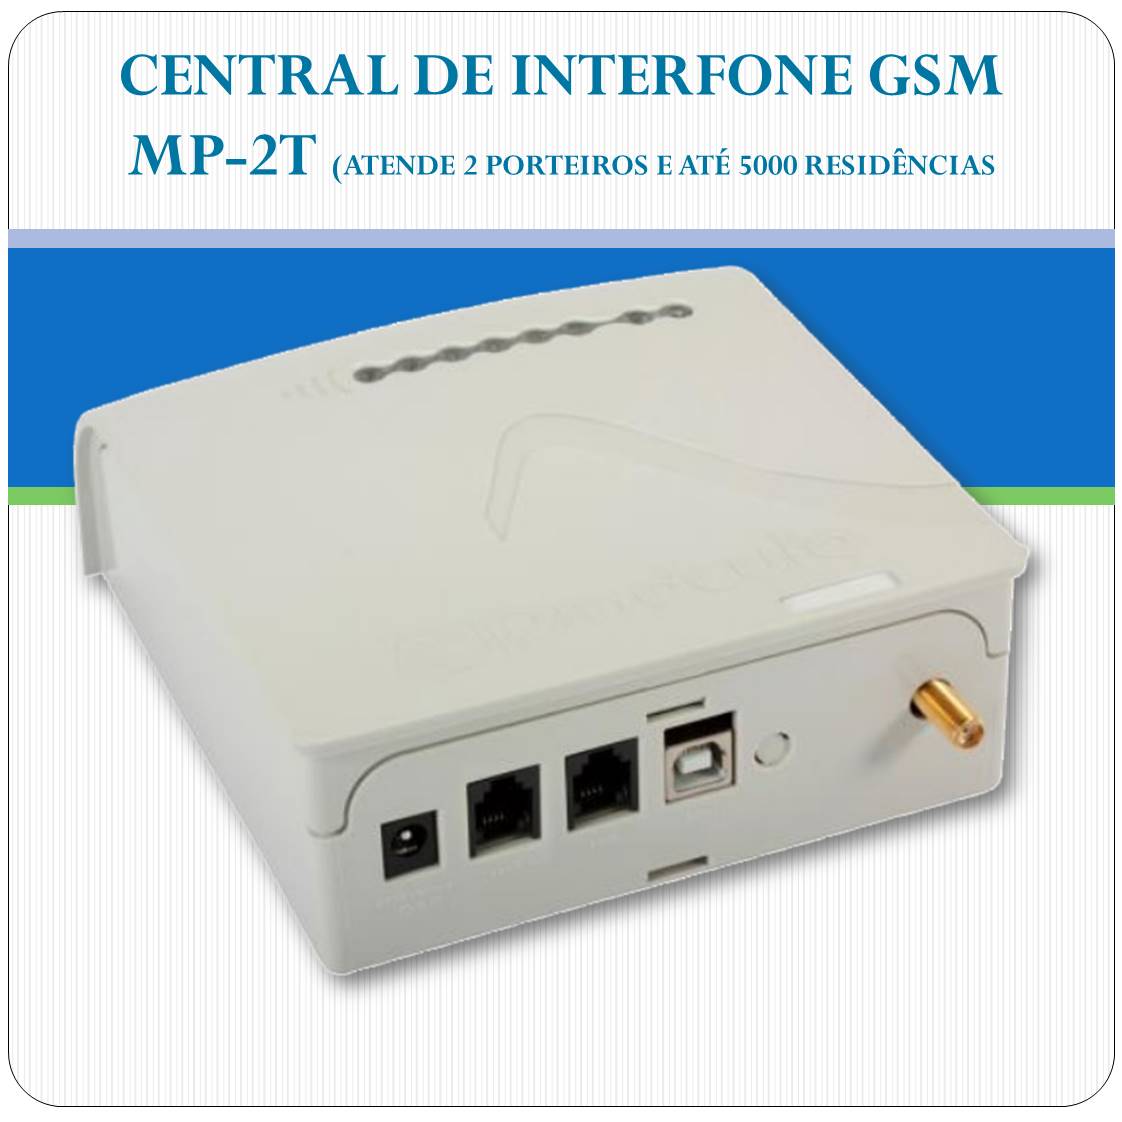 Central de porteiro eletrônico GSM (via celular)